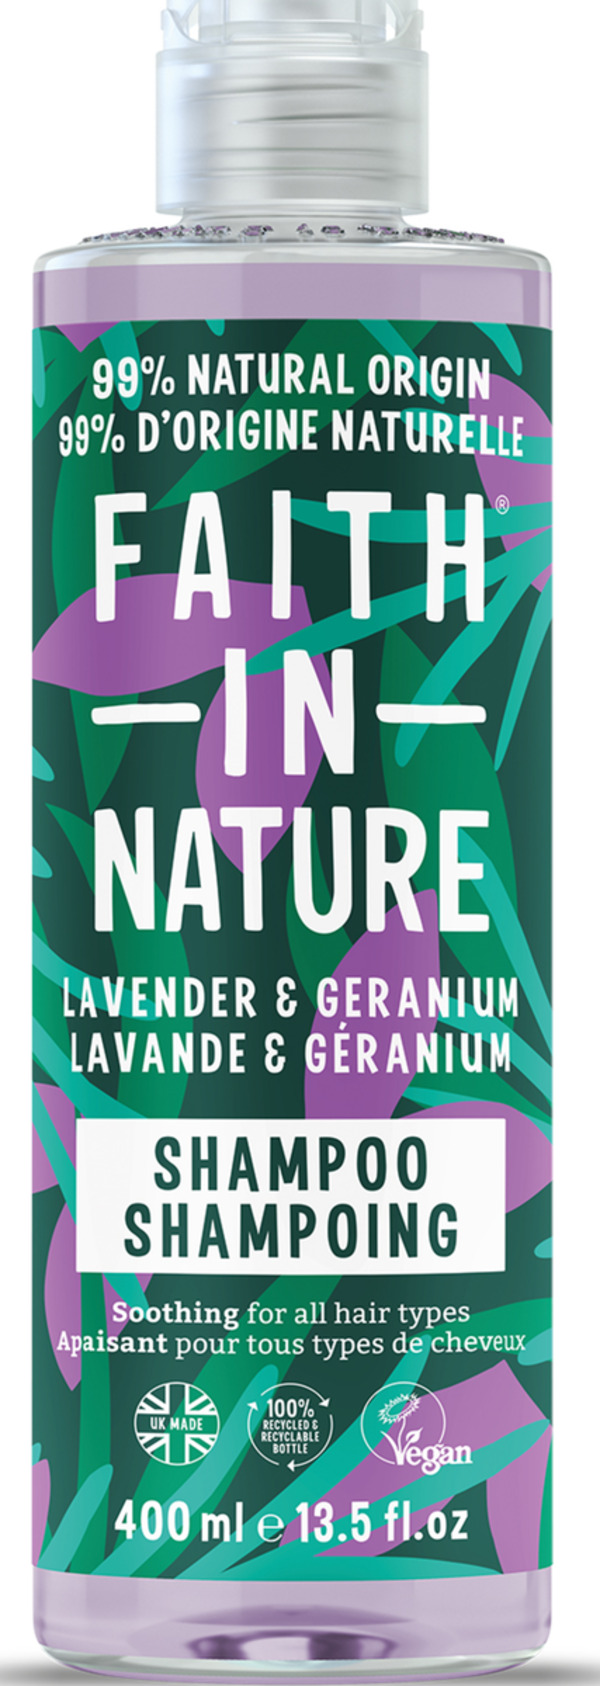 Bild 1 von Faith in Nature Shampoo Lavendel & Geranie